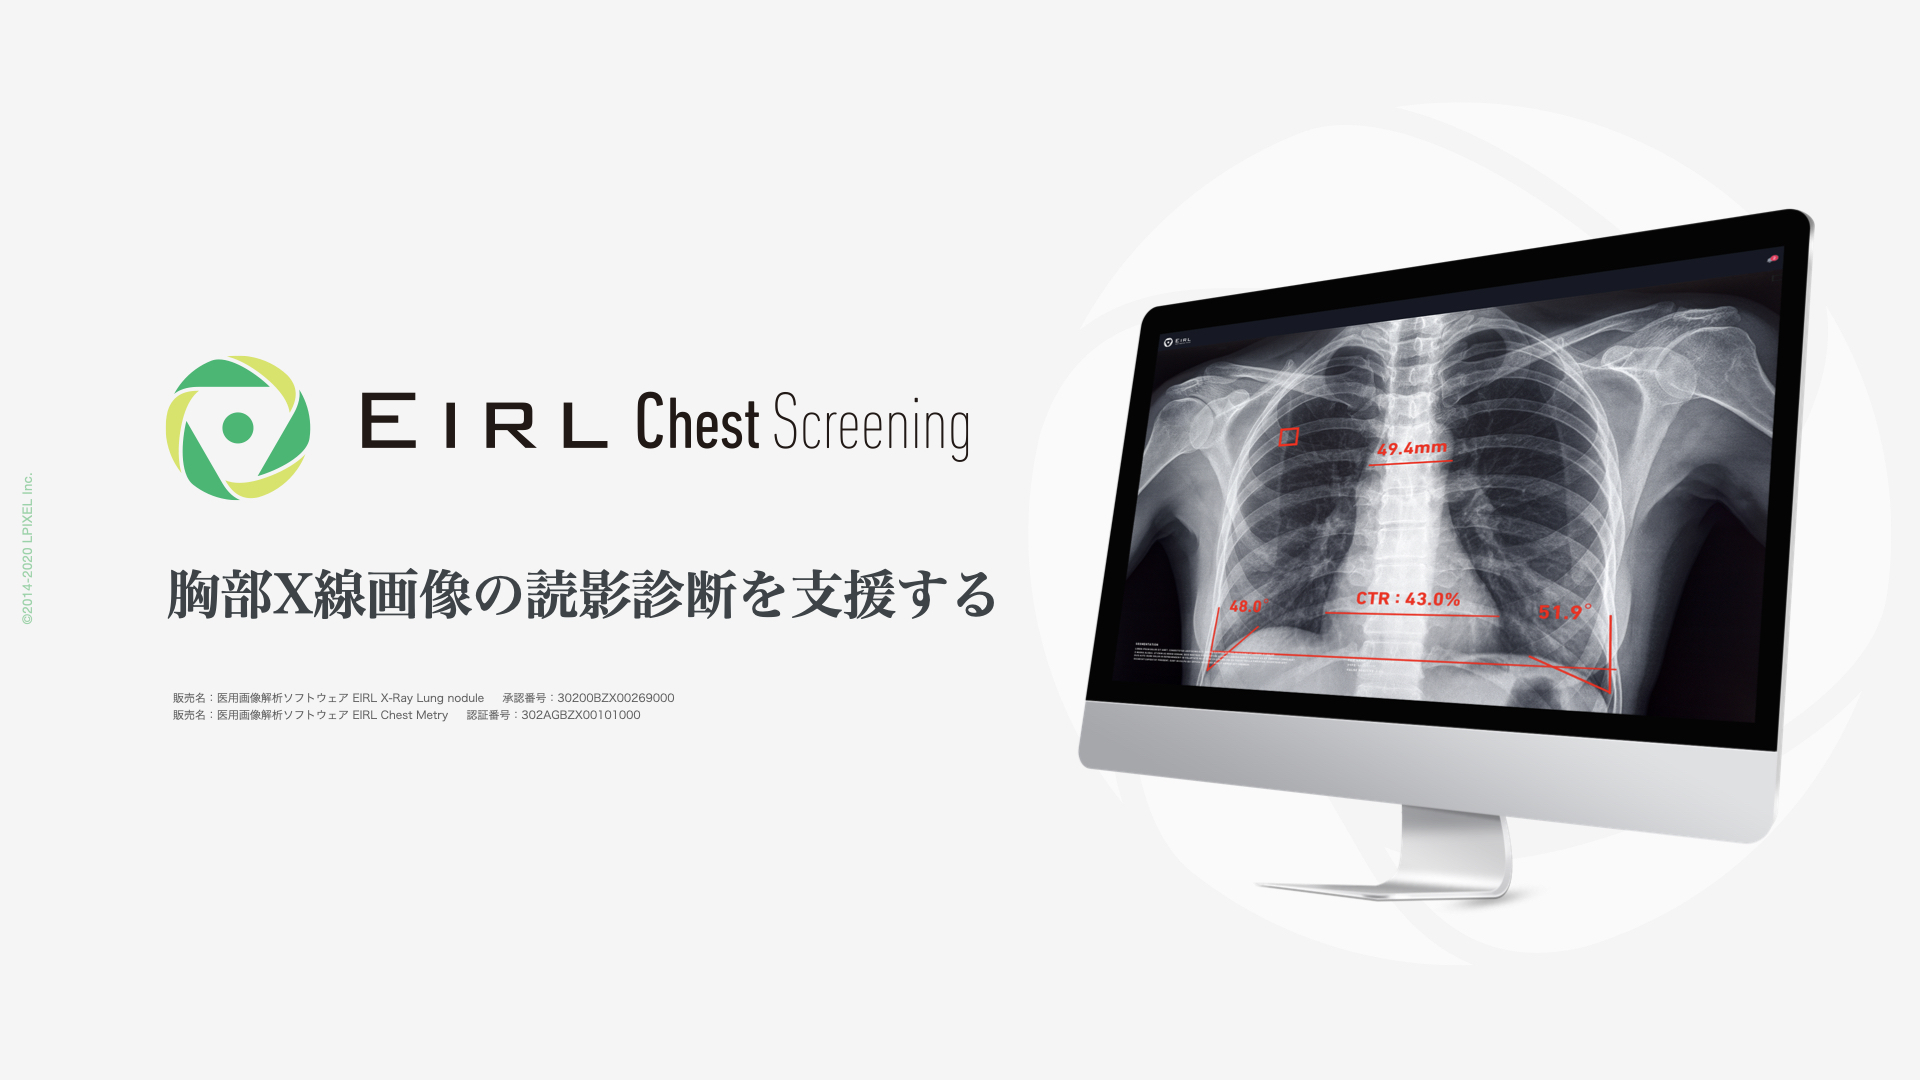 胸部X線画像の読影診断を支援するEIRL Chest Screening、肺結節候補域の検出と5つの計測機能を有する新モデルとして販売開始